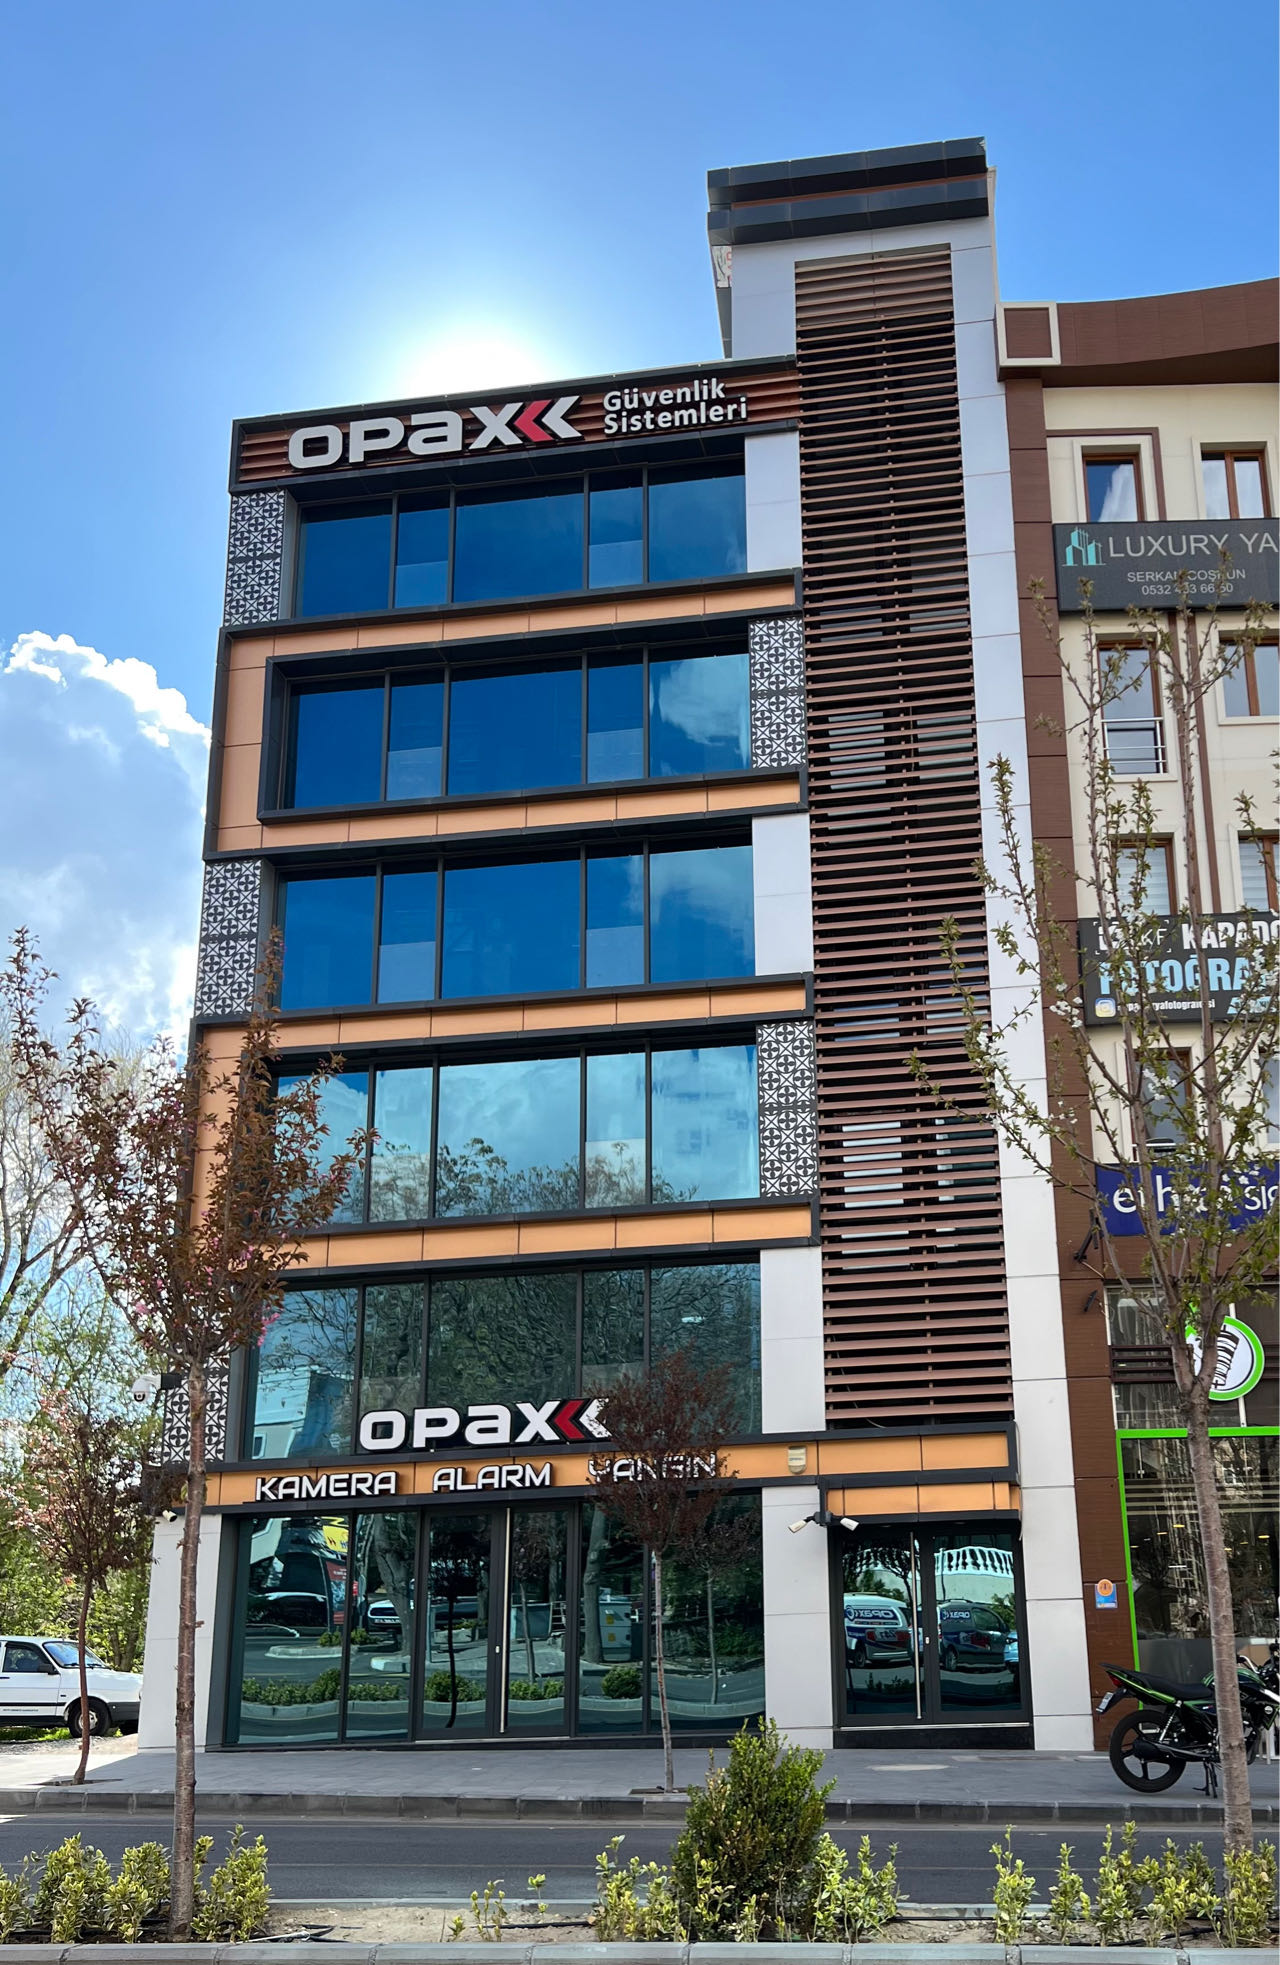 Opax Güvenlik Sistemleri Nevşehir Plaza 2020